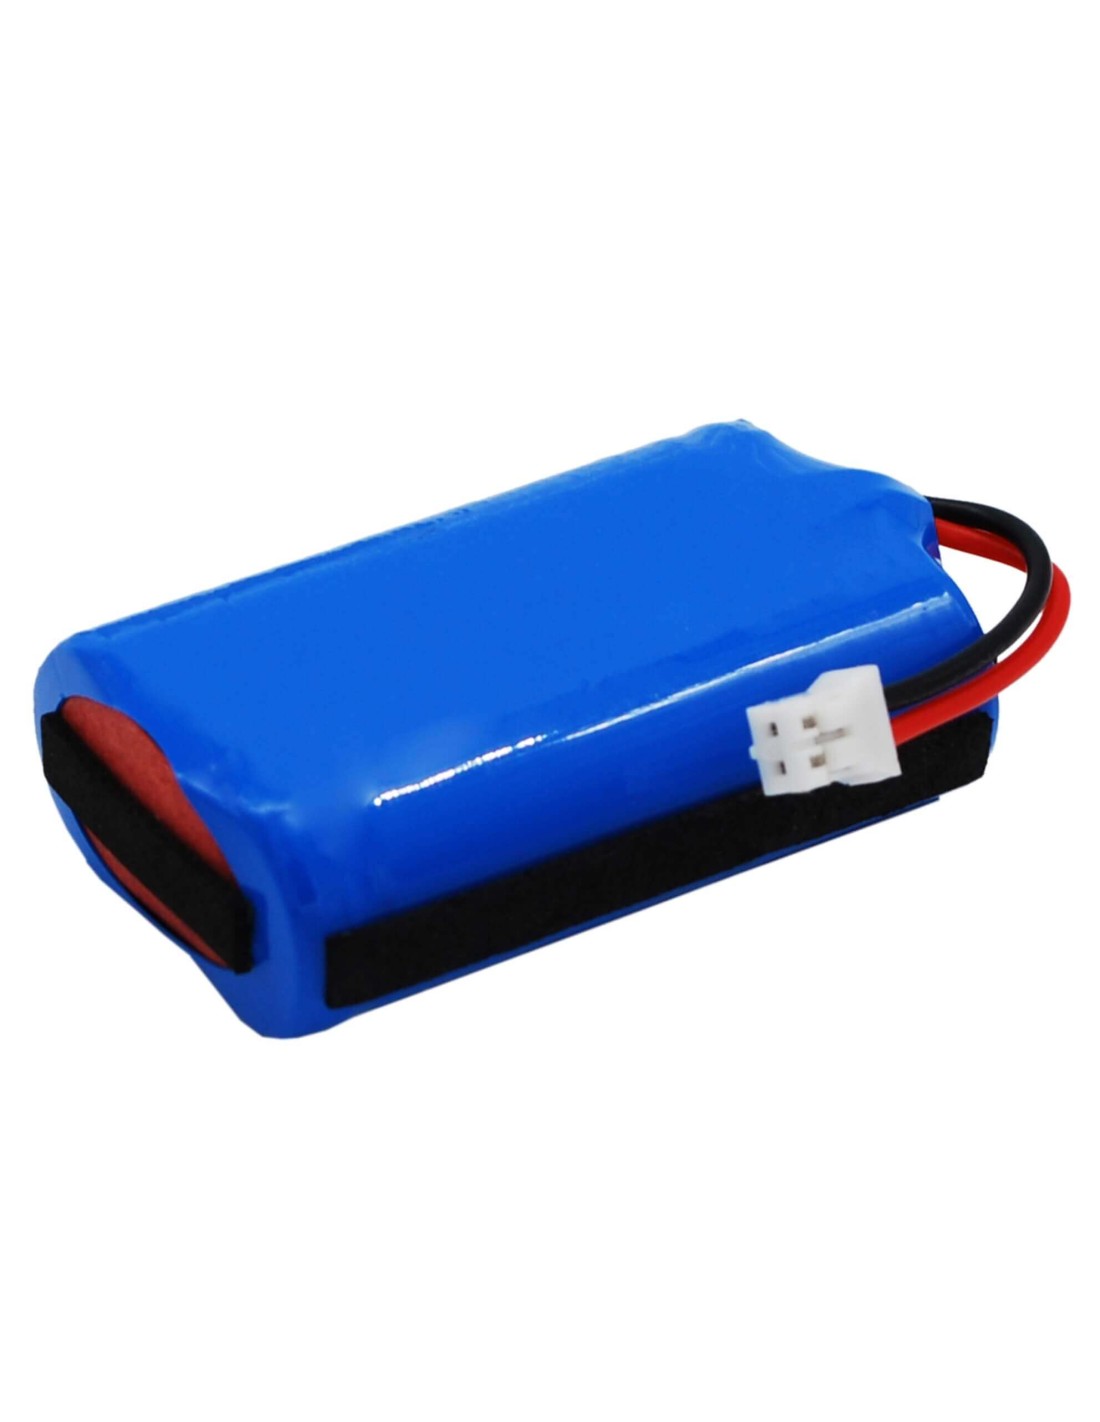 Battery for Sportdog Sd-2525 Prohunter Transmitter, Sd-2525 Transmitter, Prohunter 2525 7.4V, 650mAh - 4.81Wh